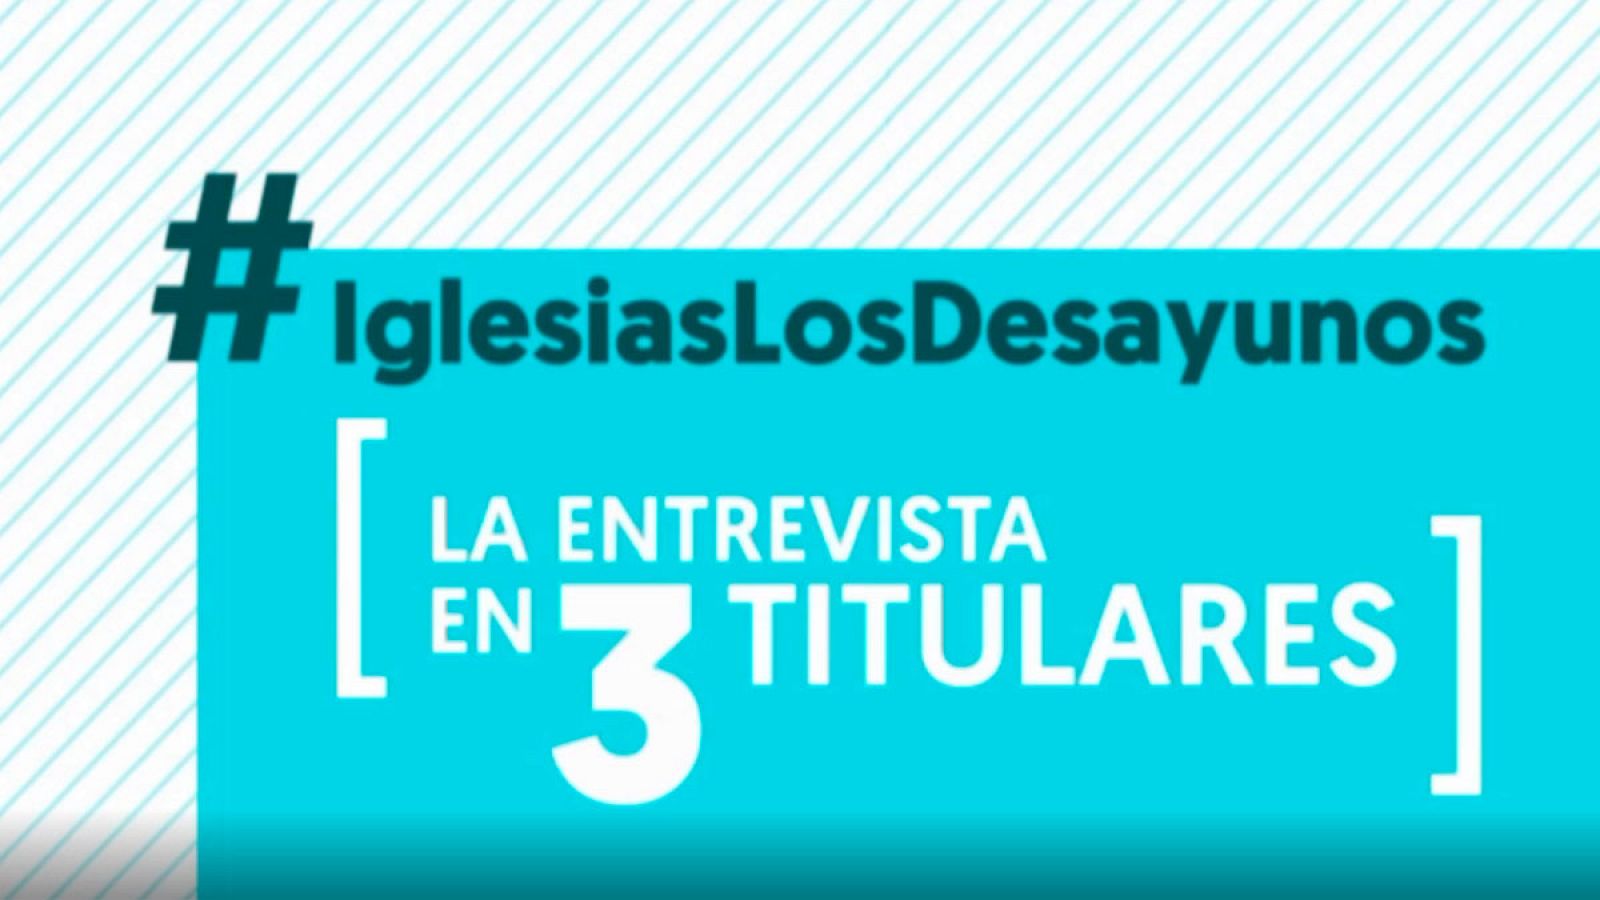 La entrevista a Pablo Iglesias en 'Los desayunos de TVE' en tres titulares